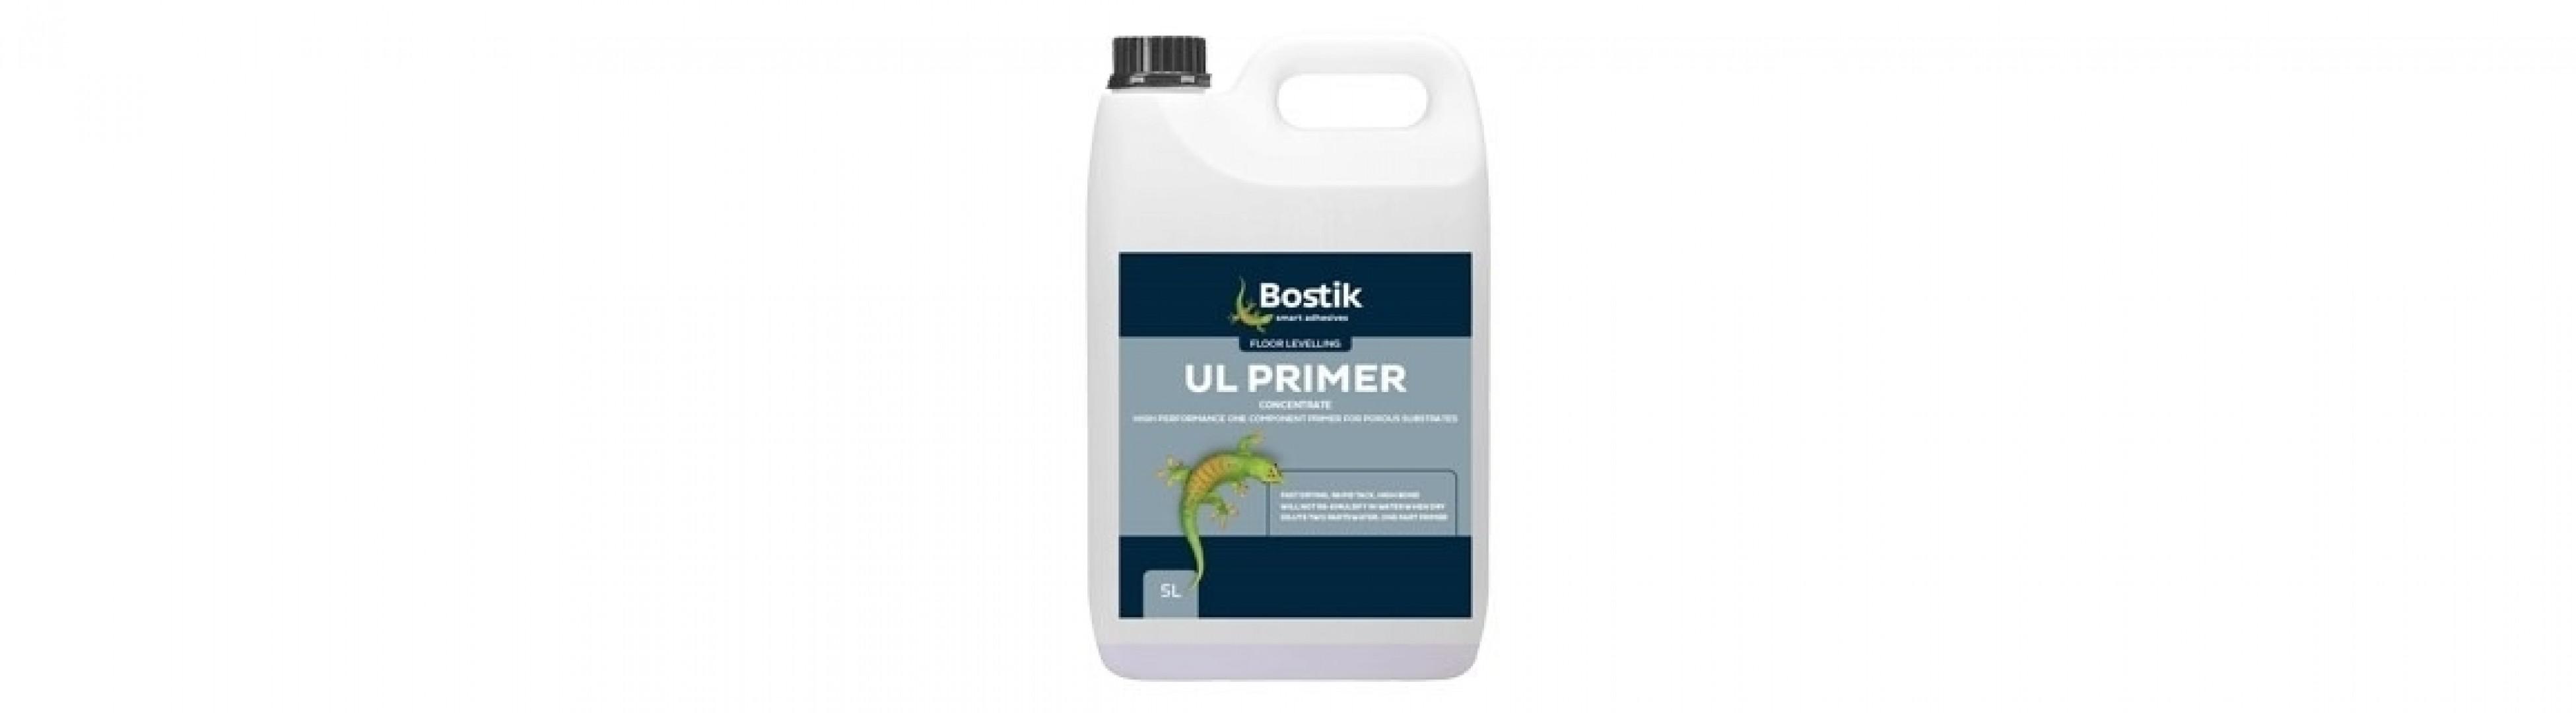 Ul-Primer from Bostik